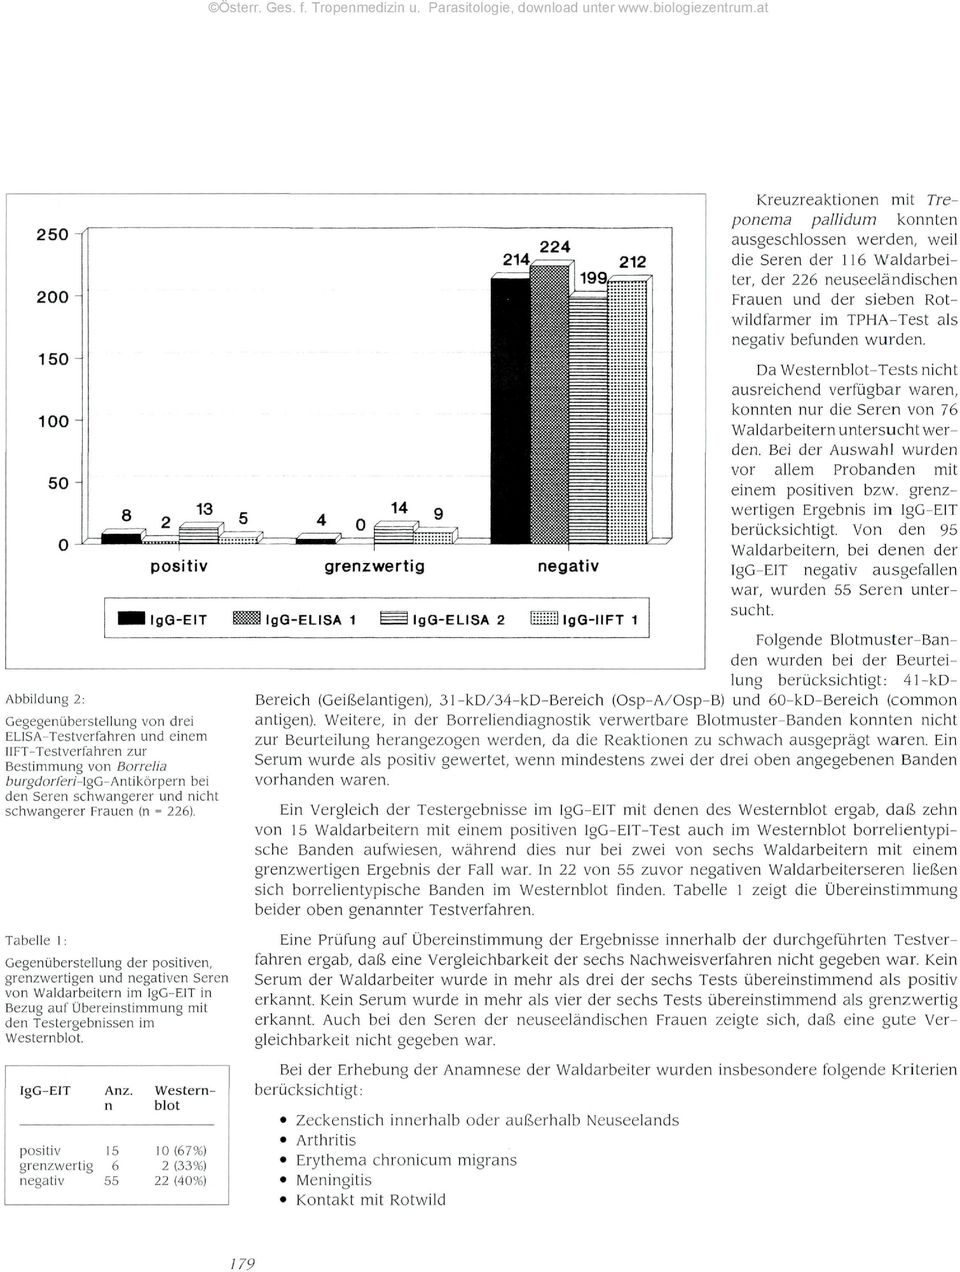 Tabelle l: Gegenüberstellung der positiven, grenzwertigen und negativen Seren von Waldarbeitern im IgG-ElT in Bezug auf Übereinstimmung mit den Testergebnissen im Westernblot. IgG-EIT Anz.